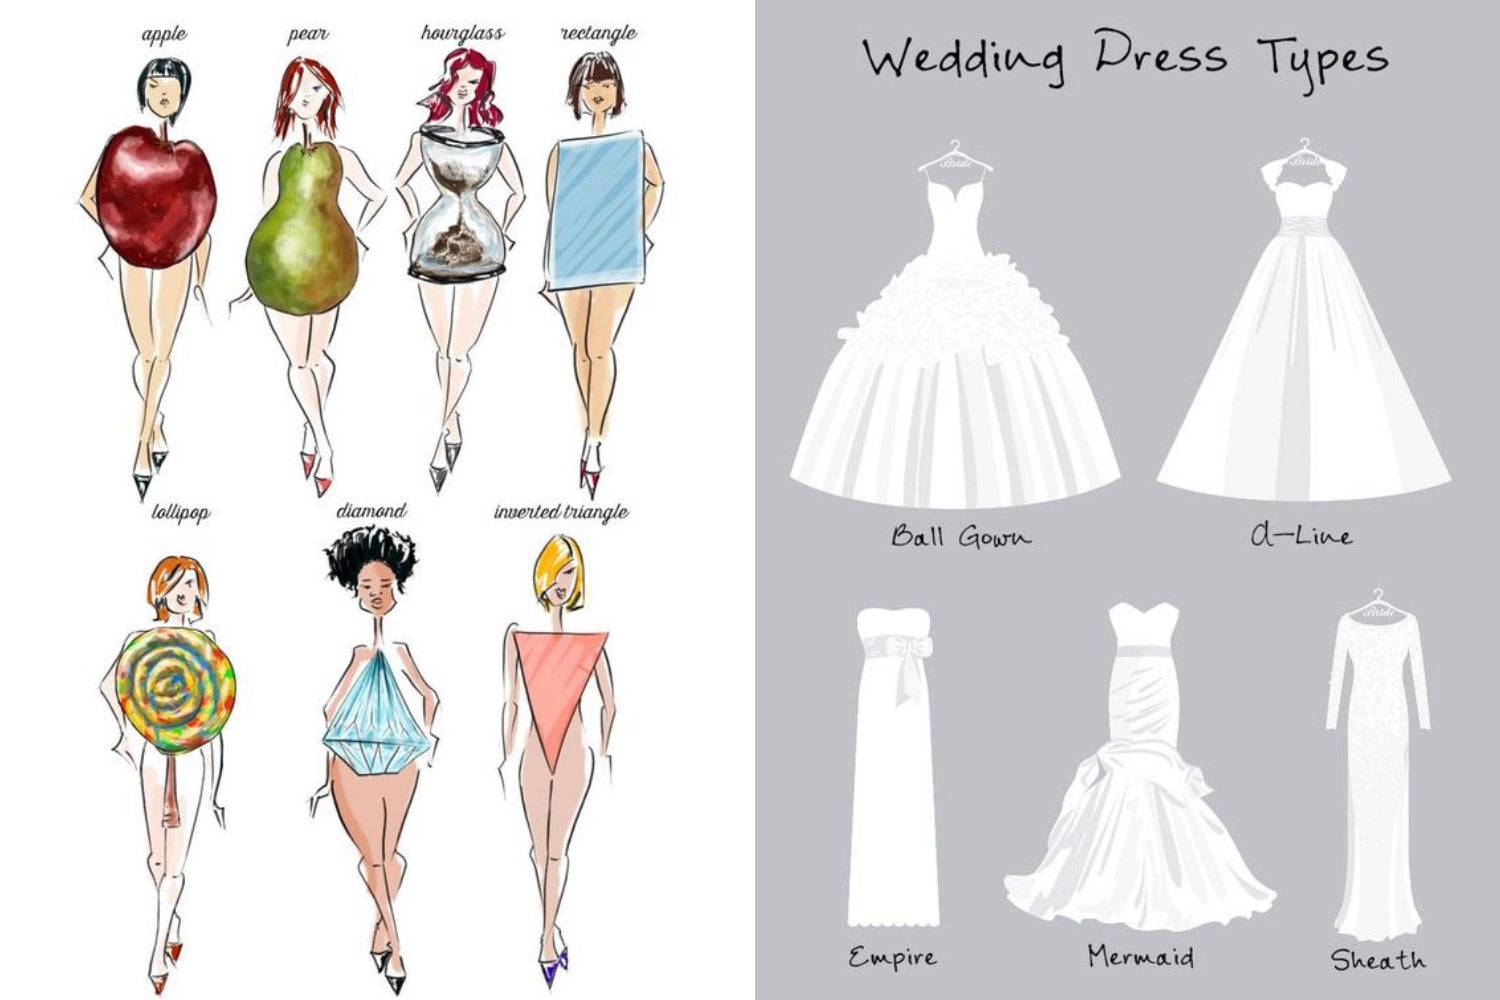 Фасоны свадебных платьев: фото модных моделей